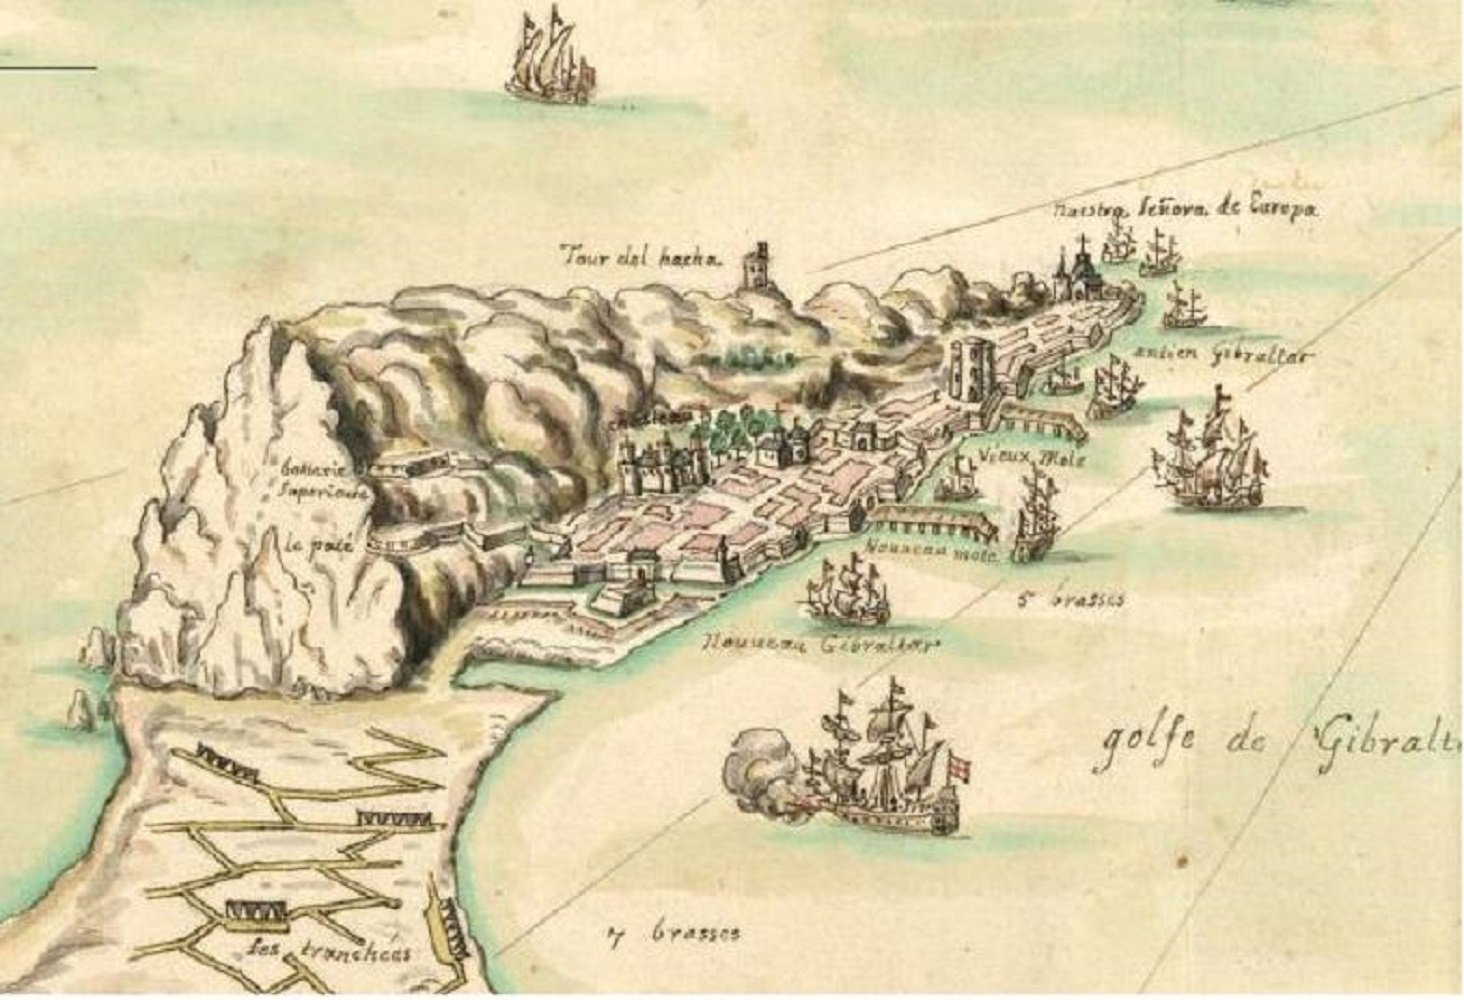 Los catalanes conquistan Gibraltar